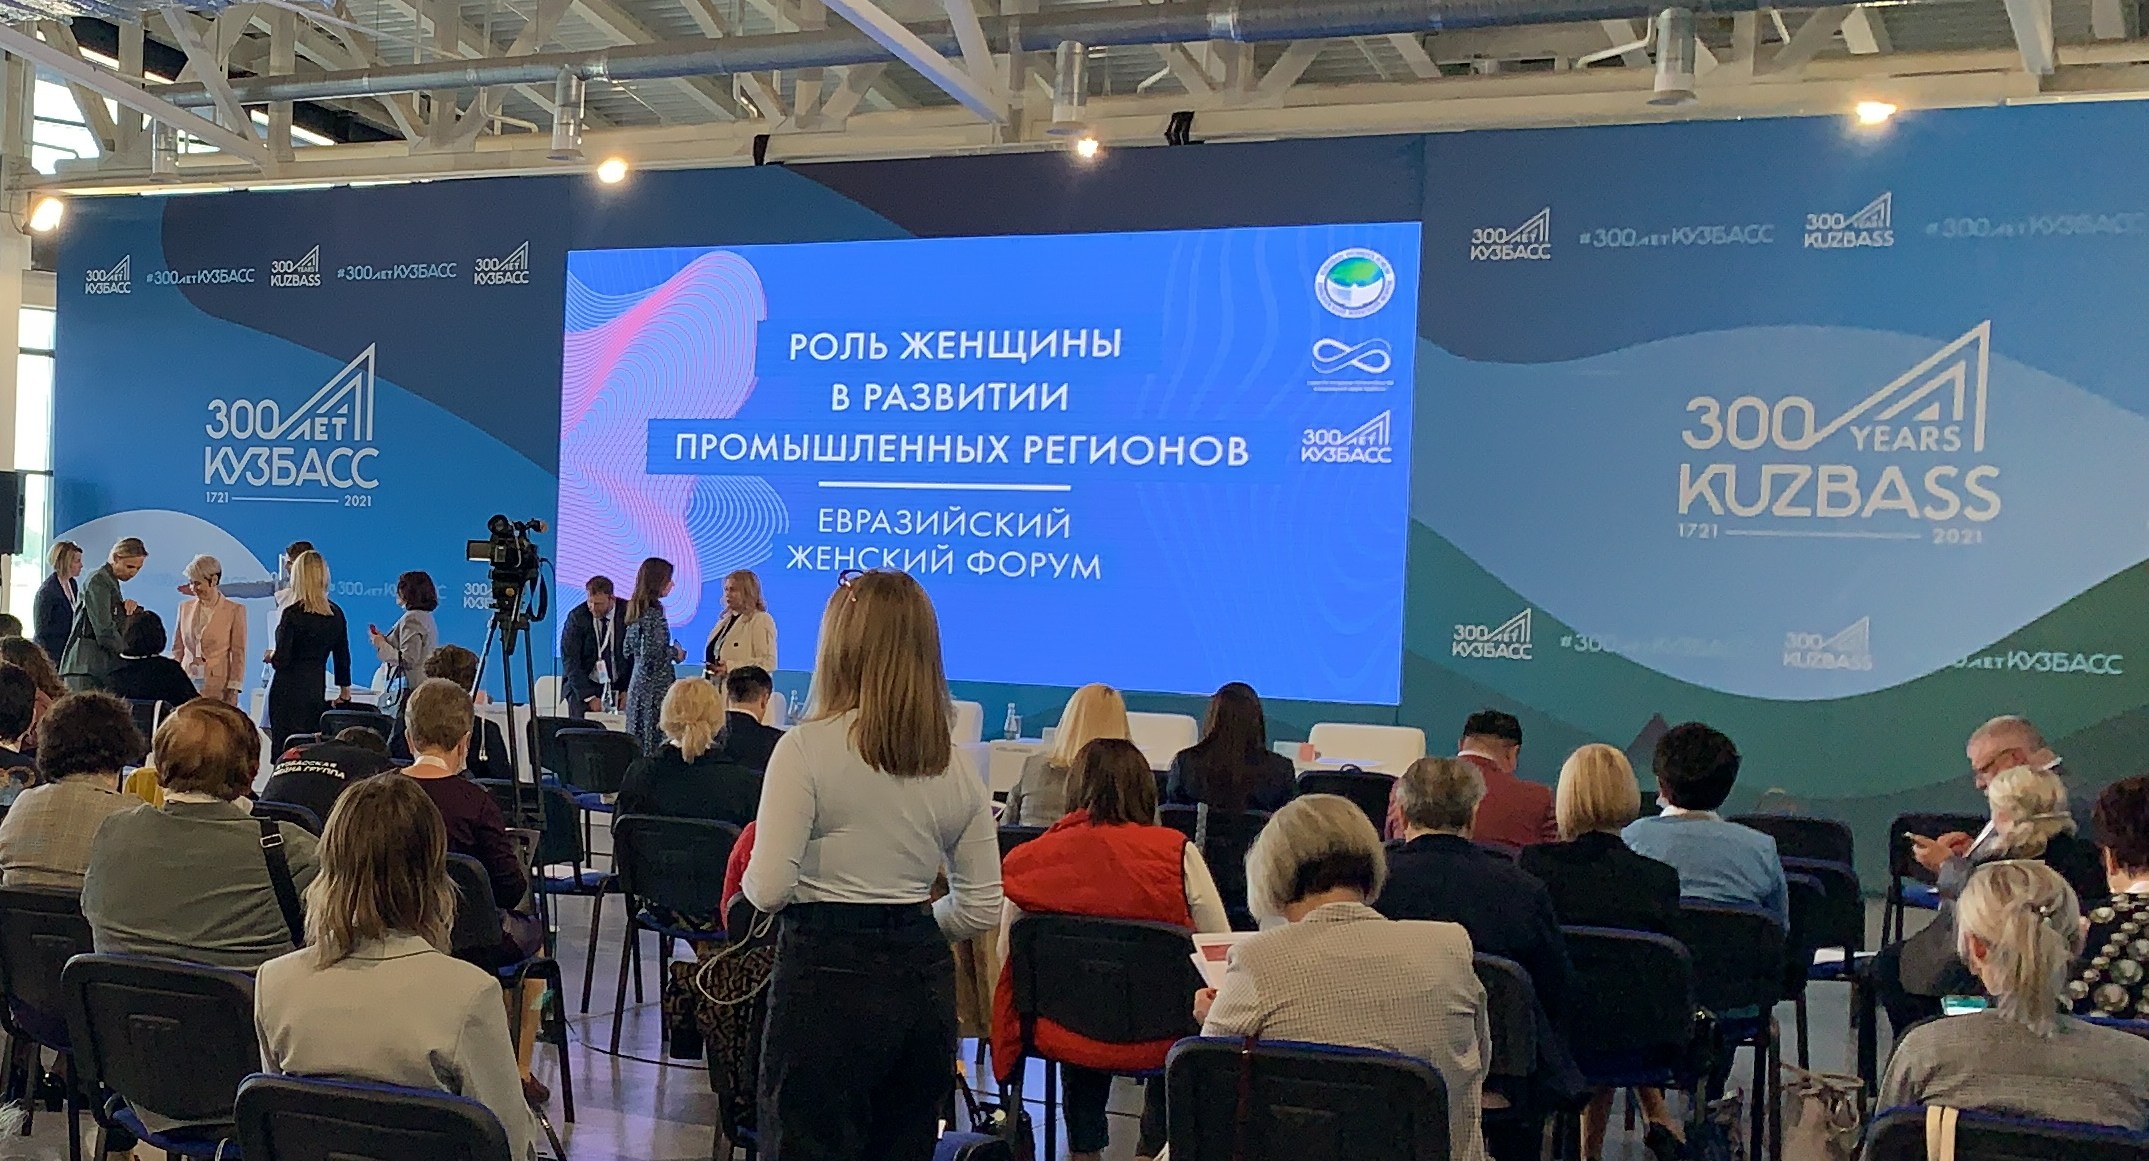 В Кемерове прошла выездная сессия Евразийского женского форума «Роль женщины в развитии промышленных регионов»